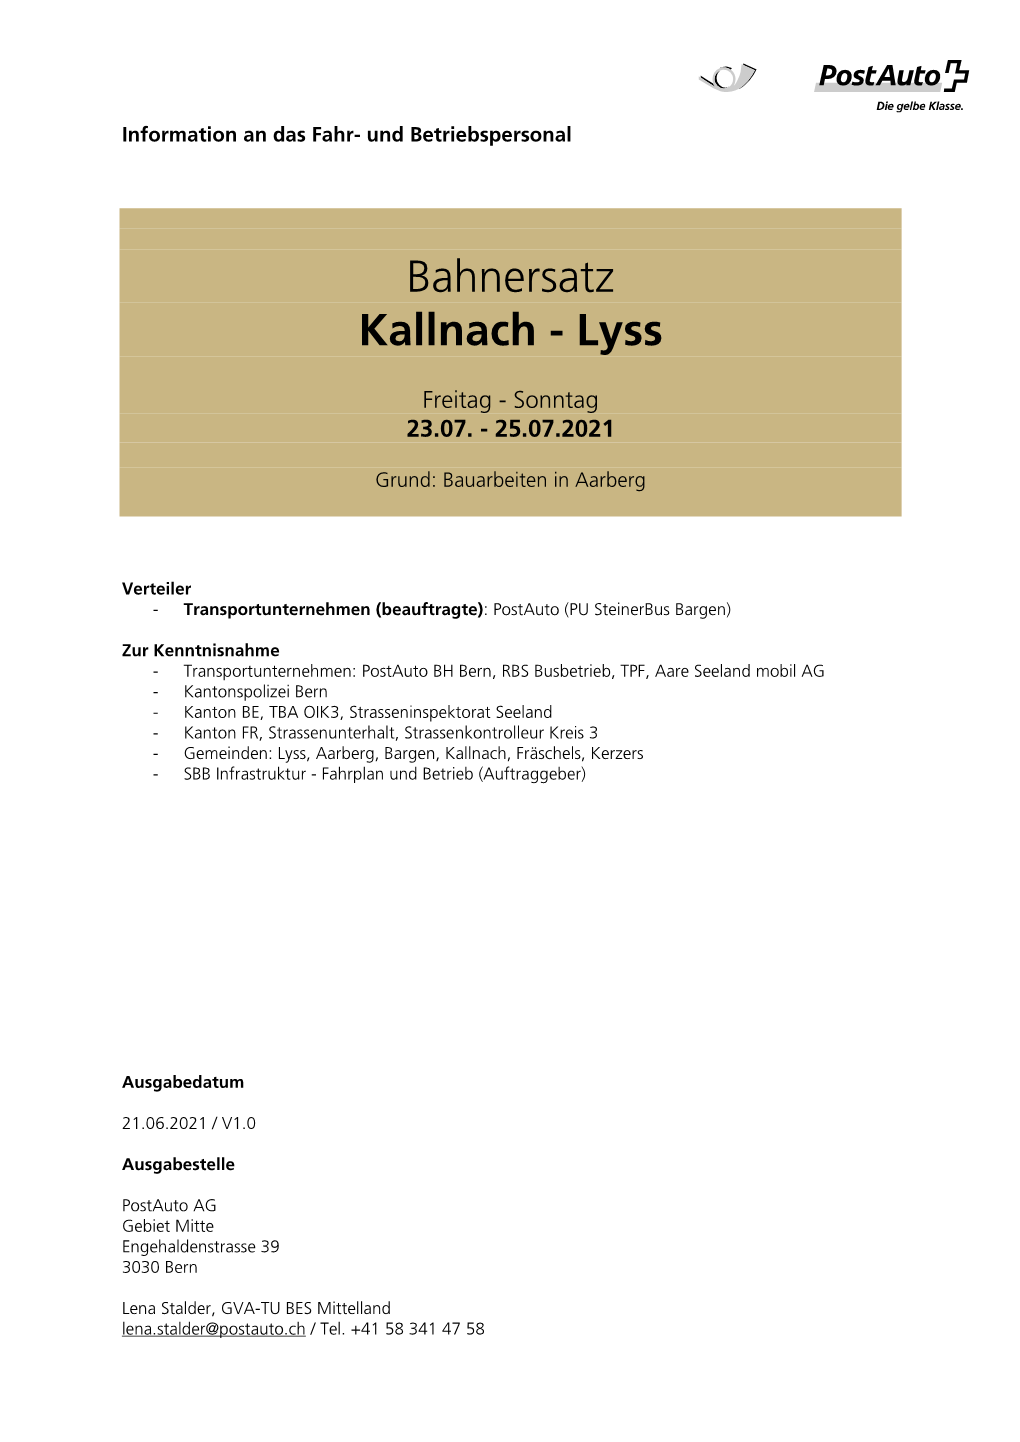 Bahnersatz Kallnach - Lyss